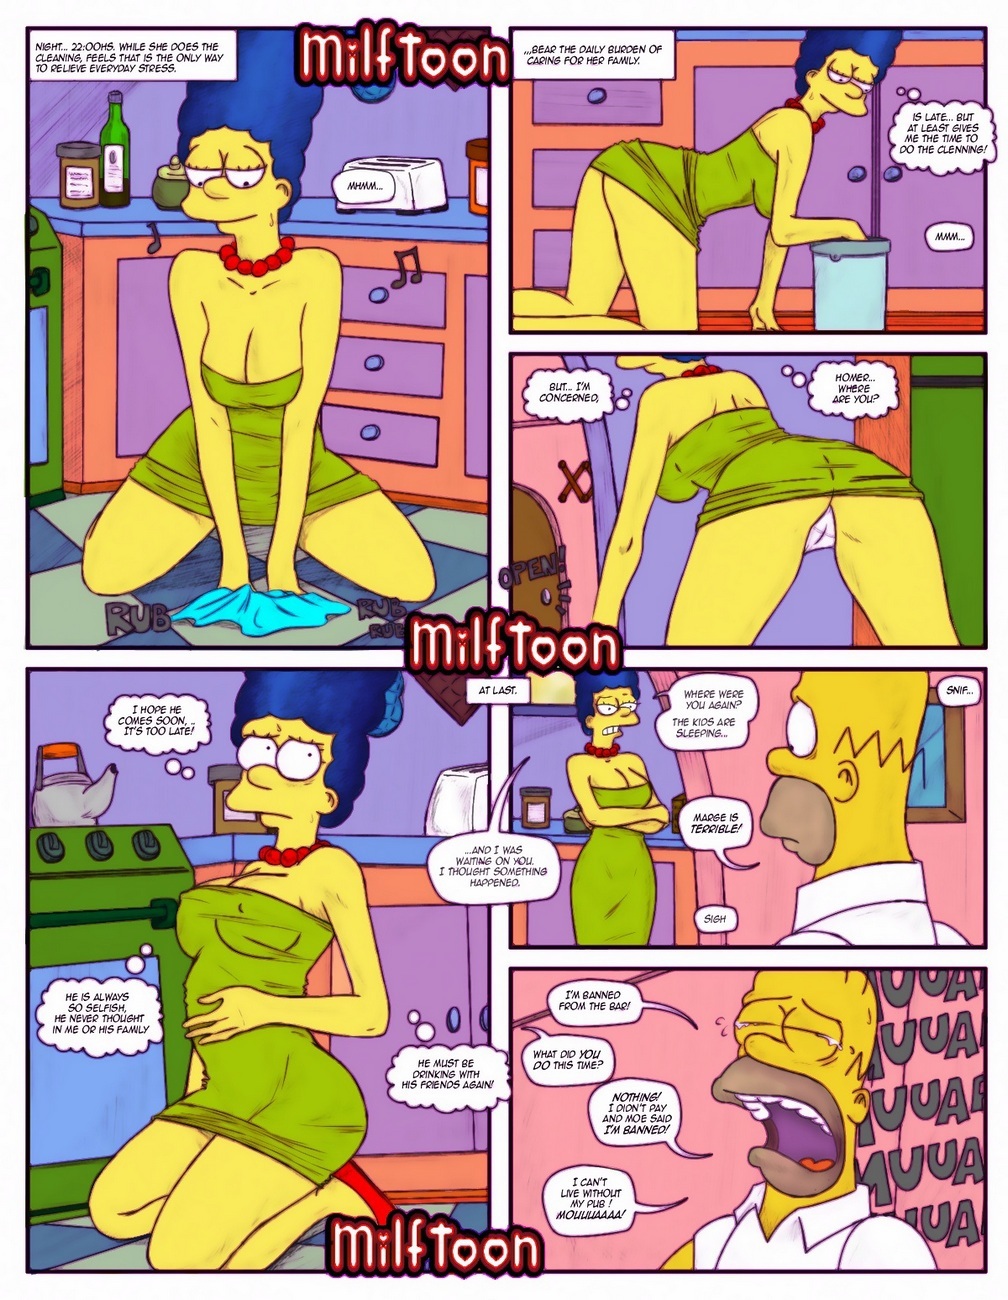 Milftoon - Simpsons